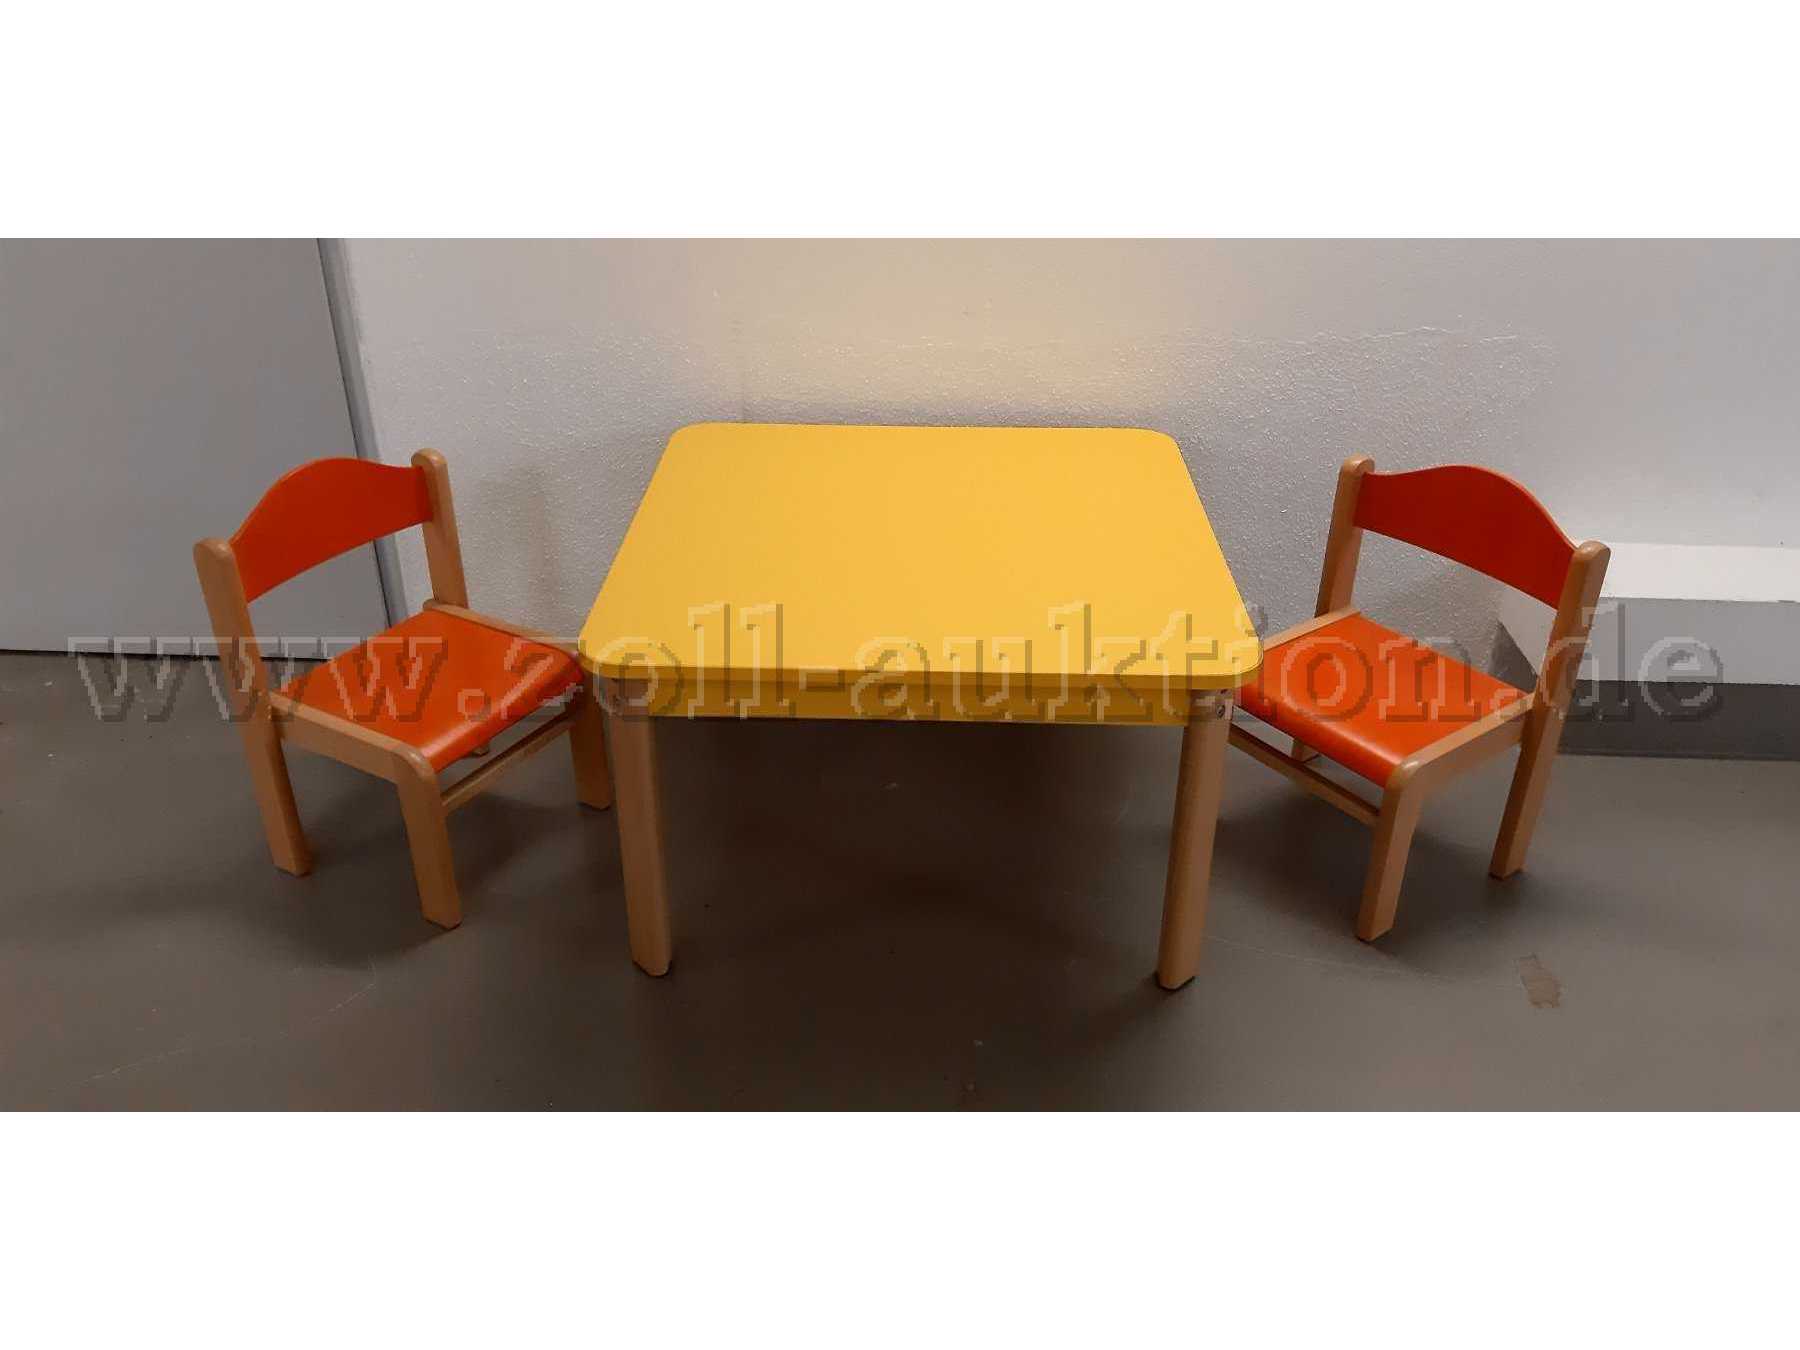 Gesamtansicht Stühle und Tisch - Draufsicht